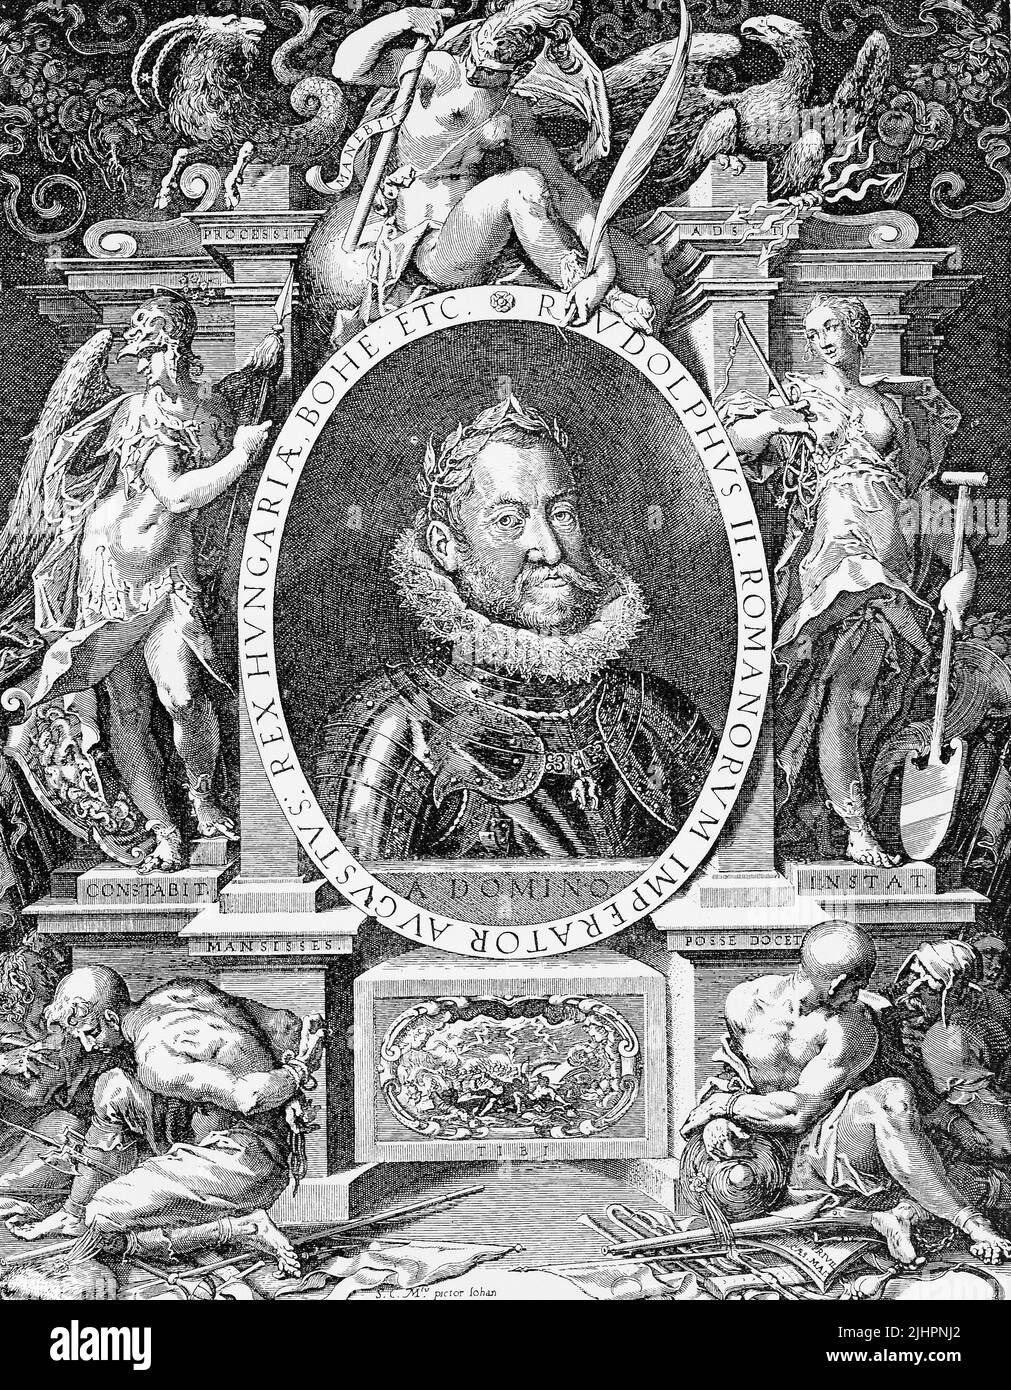 Rudolf II (geboren 18. Juli 1552, gesZorben 20. Januar 1612) war Kaiser des Heiligen Römischen Reichs (1576-1612), König von Böhmen (1576-1611) König von Ungarn und Erzherzog von Österreich (1576-1608) / Maximilien II (geboren am 31. Juli 1527, gesZorben am 12. Oktober 1576), war Kaiser des Heiligen Römischen Reiches und Erzherzog von Österreich von 1564 bis 1576, Historisch, digital restaurierte Reproduktion einer Originalvorlage aus dem 19. Jahrhundert, genaues Originaldatum nicht bekannt, Banque D'Images